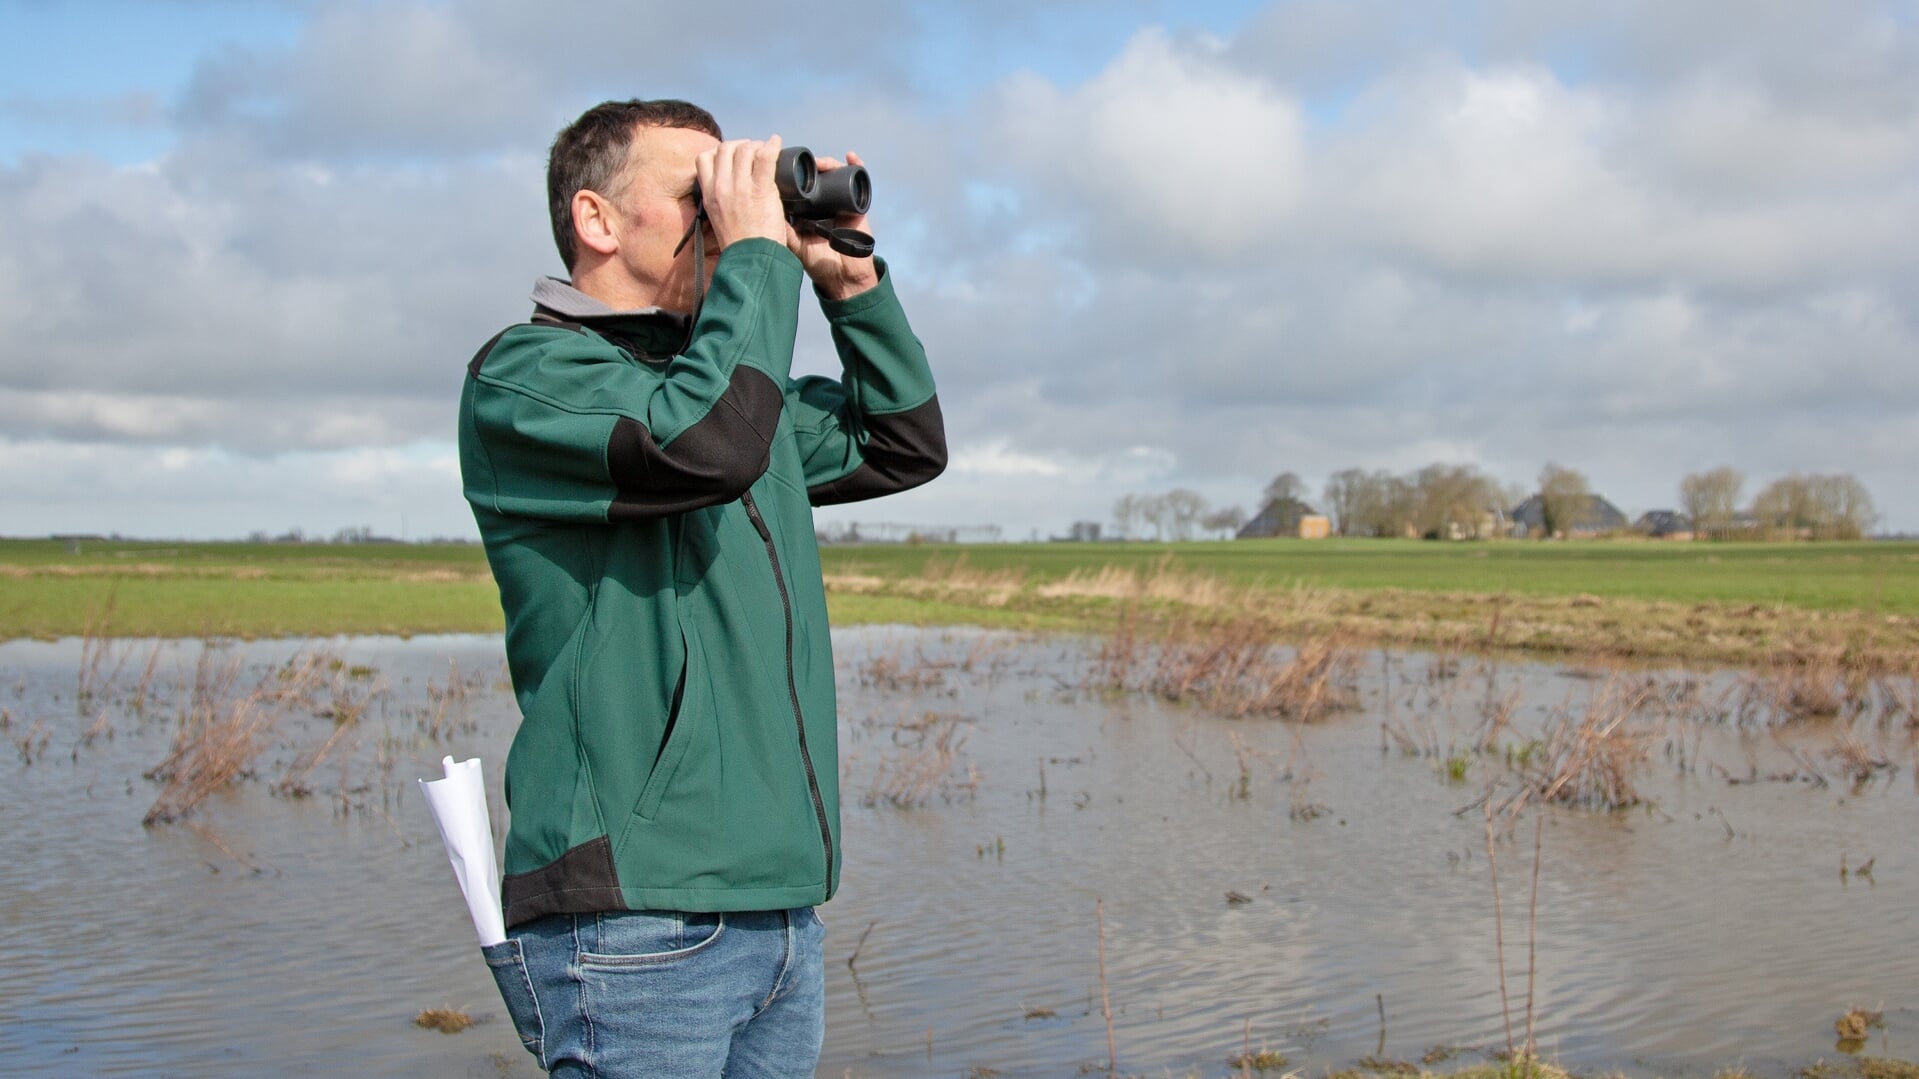 Weidevogelbeschermers helpen de boeren om nesten in kaart te brengen. Foto: Collectief Groningen West.